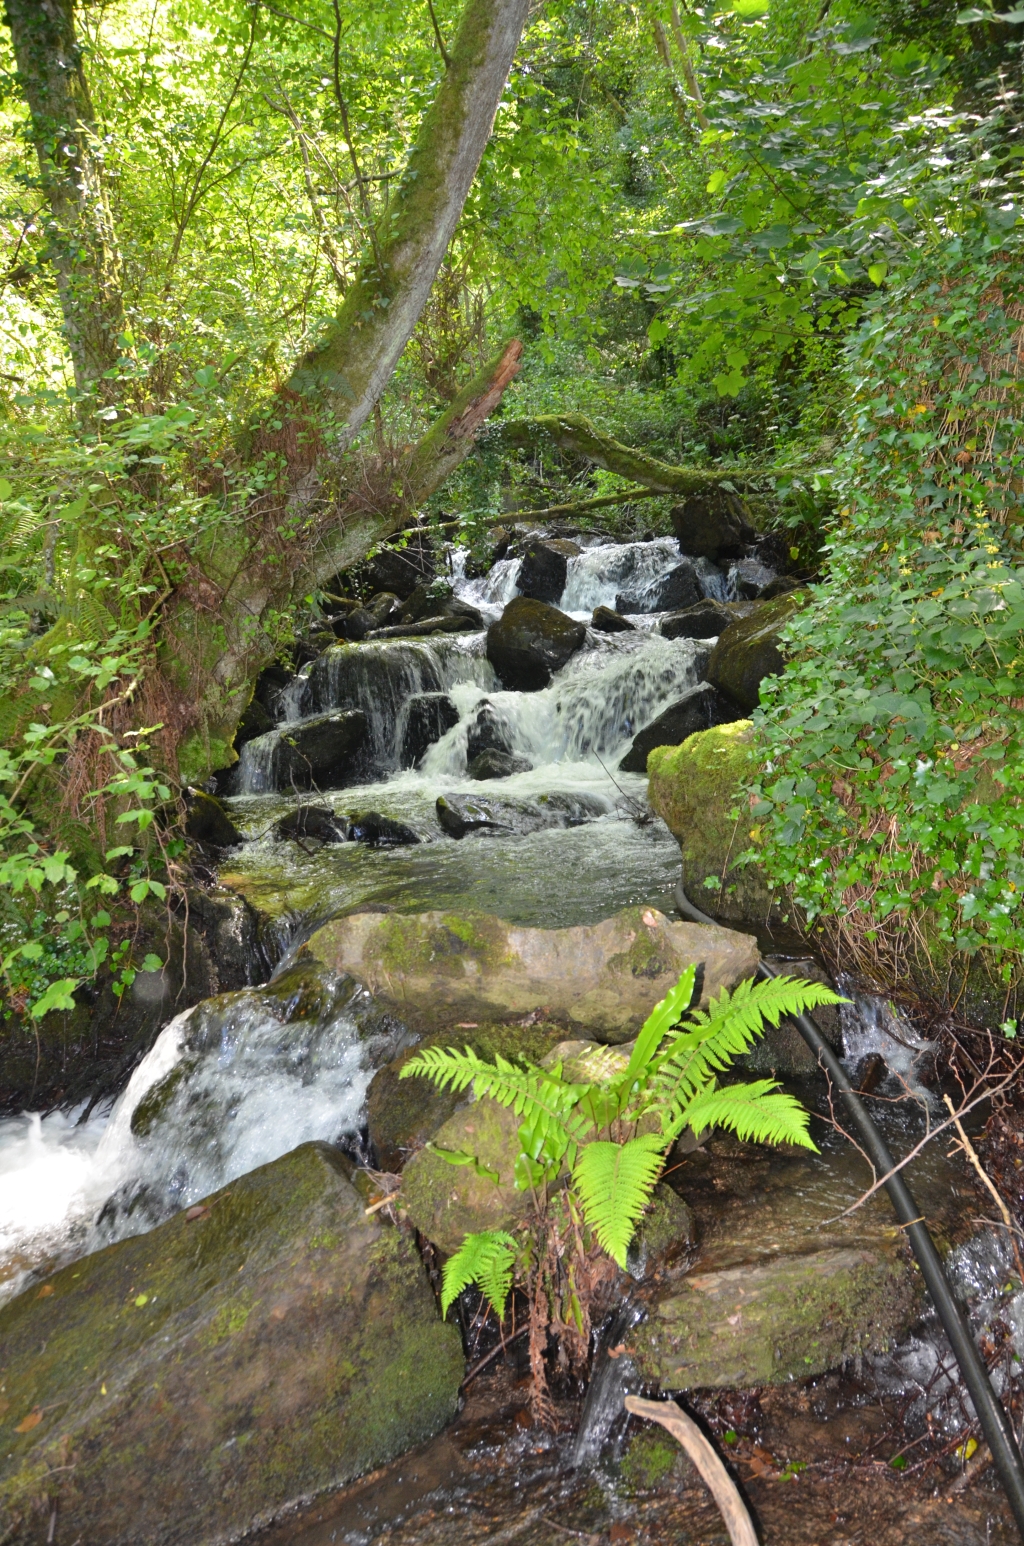 Reserva Natural Fluvial Deba